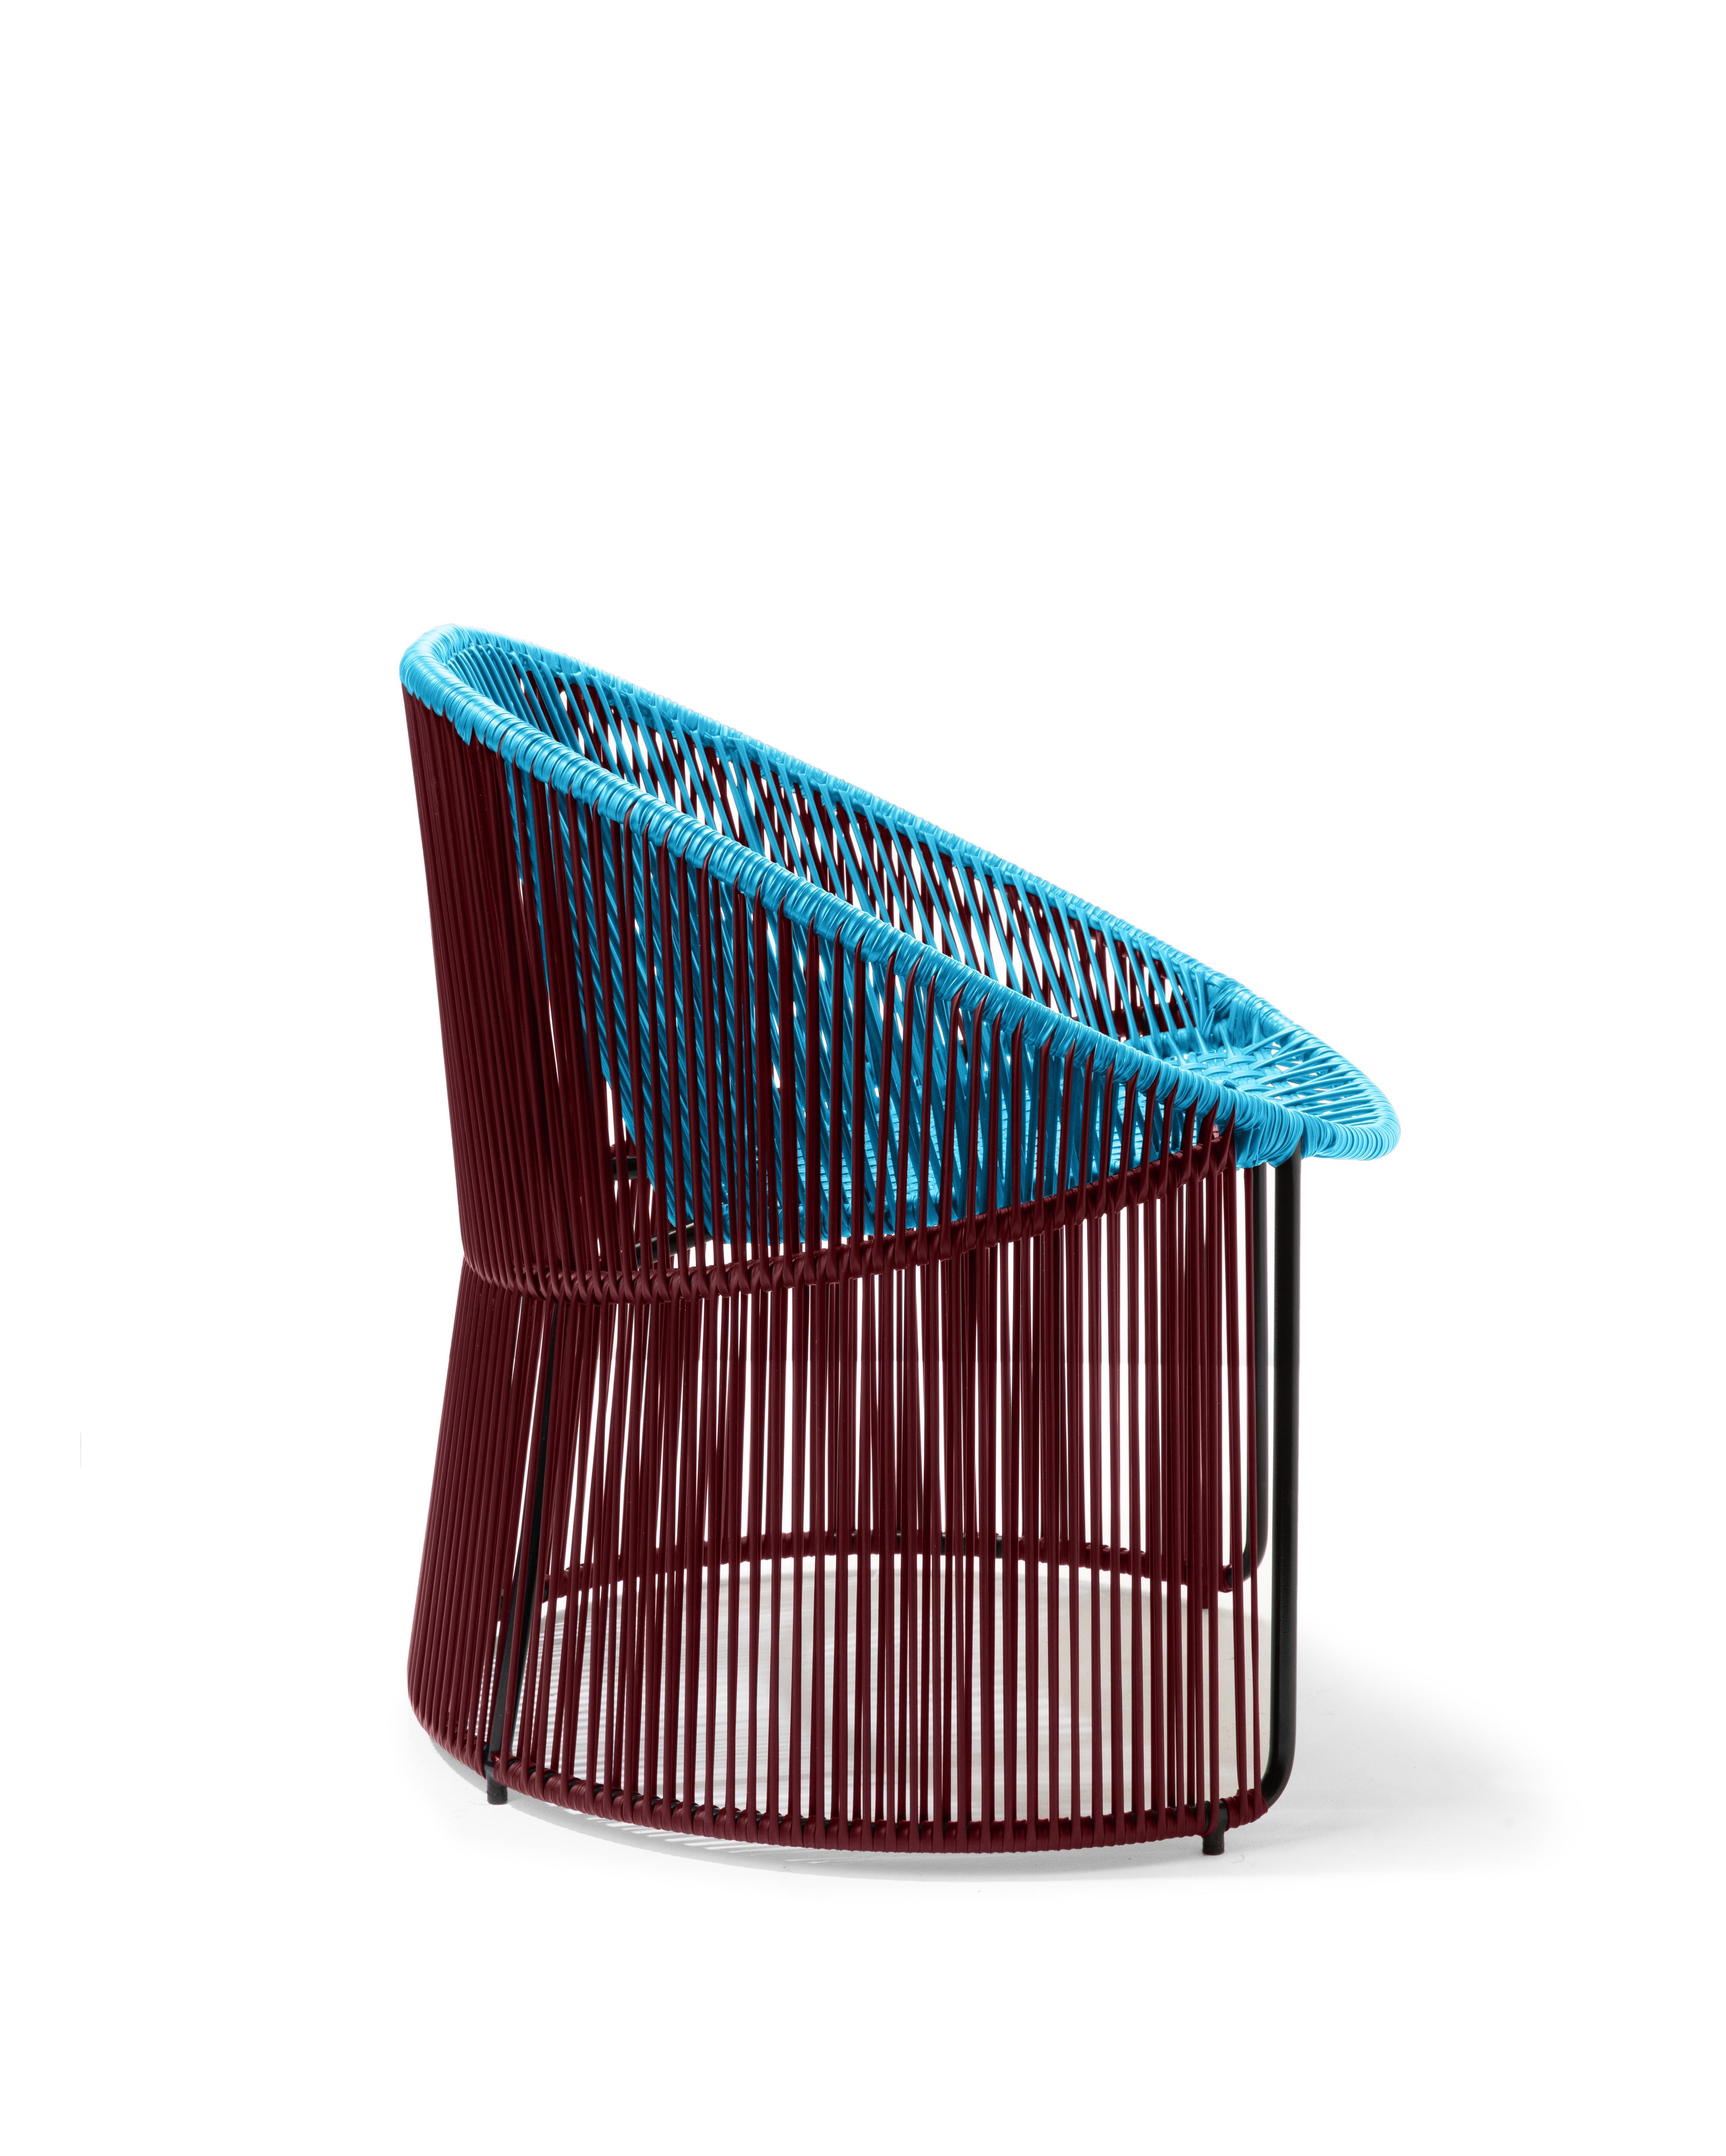 German Blue Cartagenas Lounge Chair by Sebastian Herkner For Sale